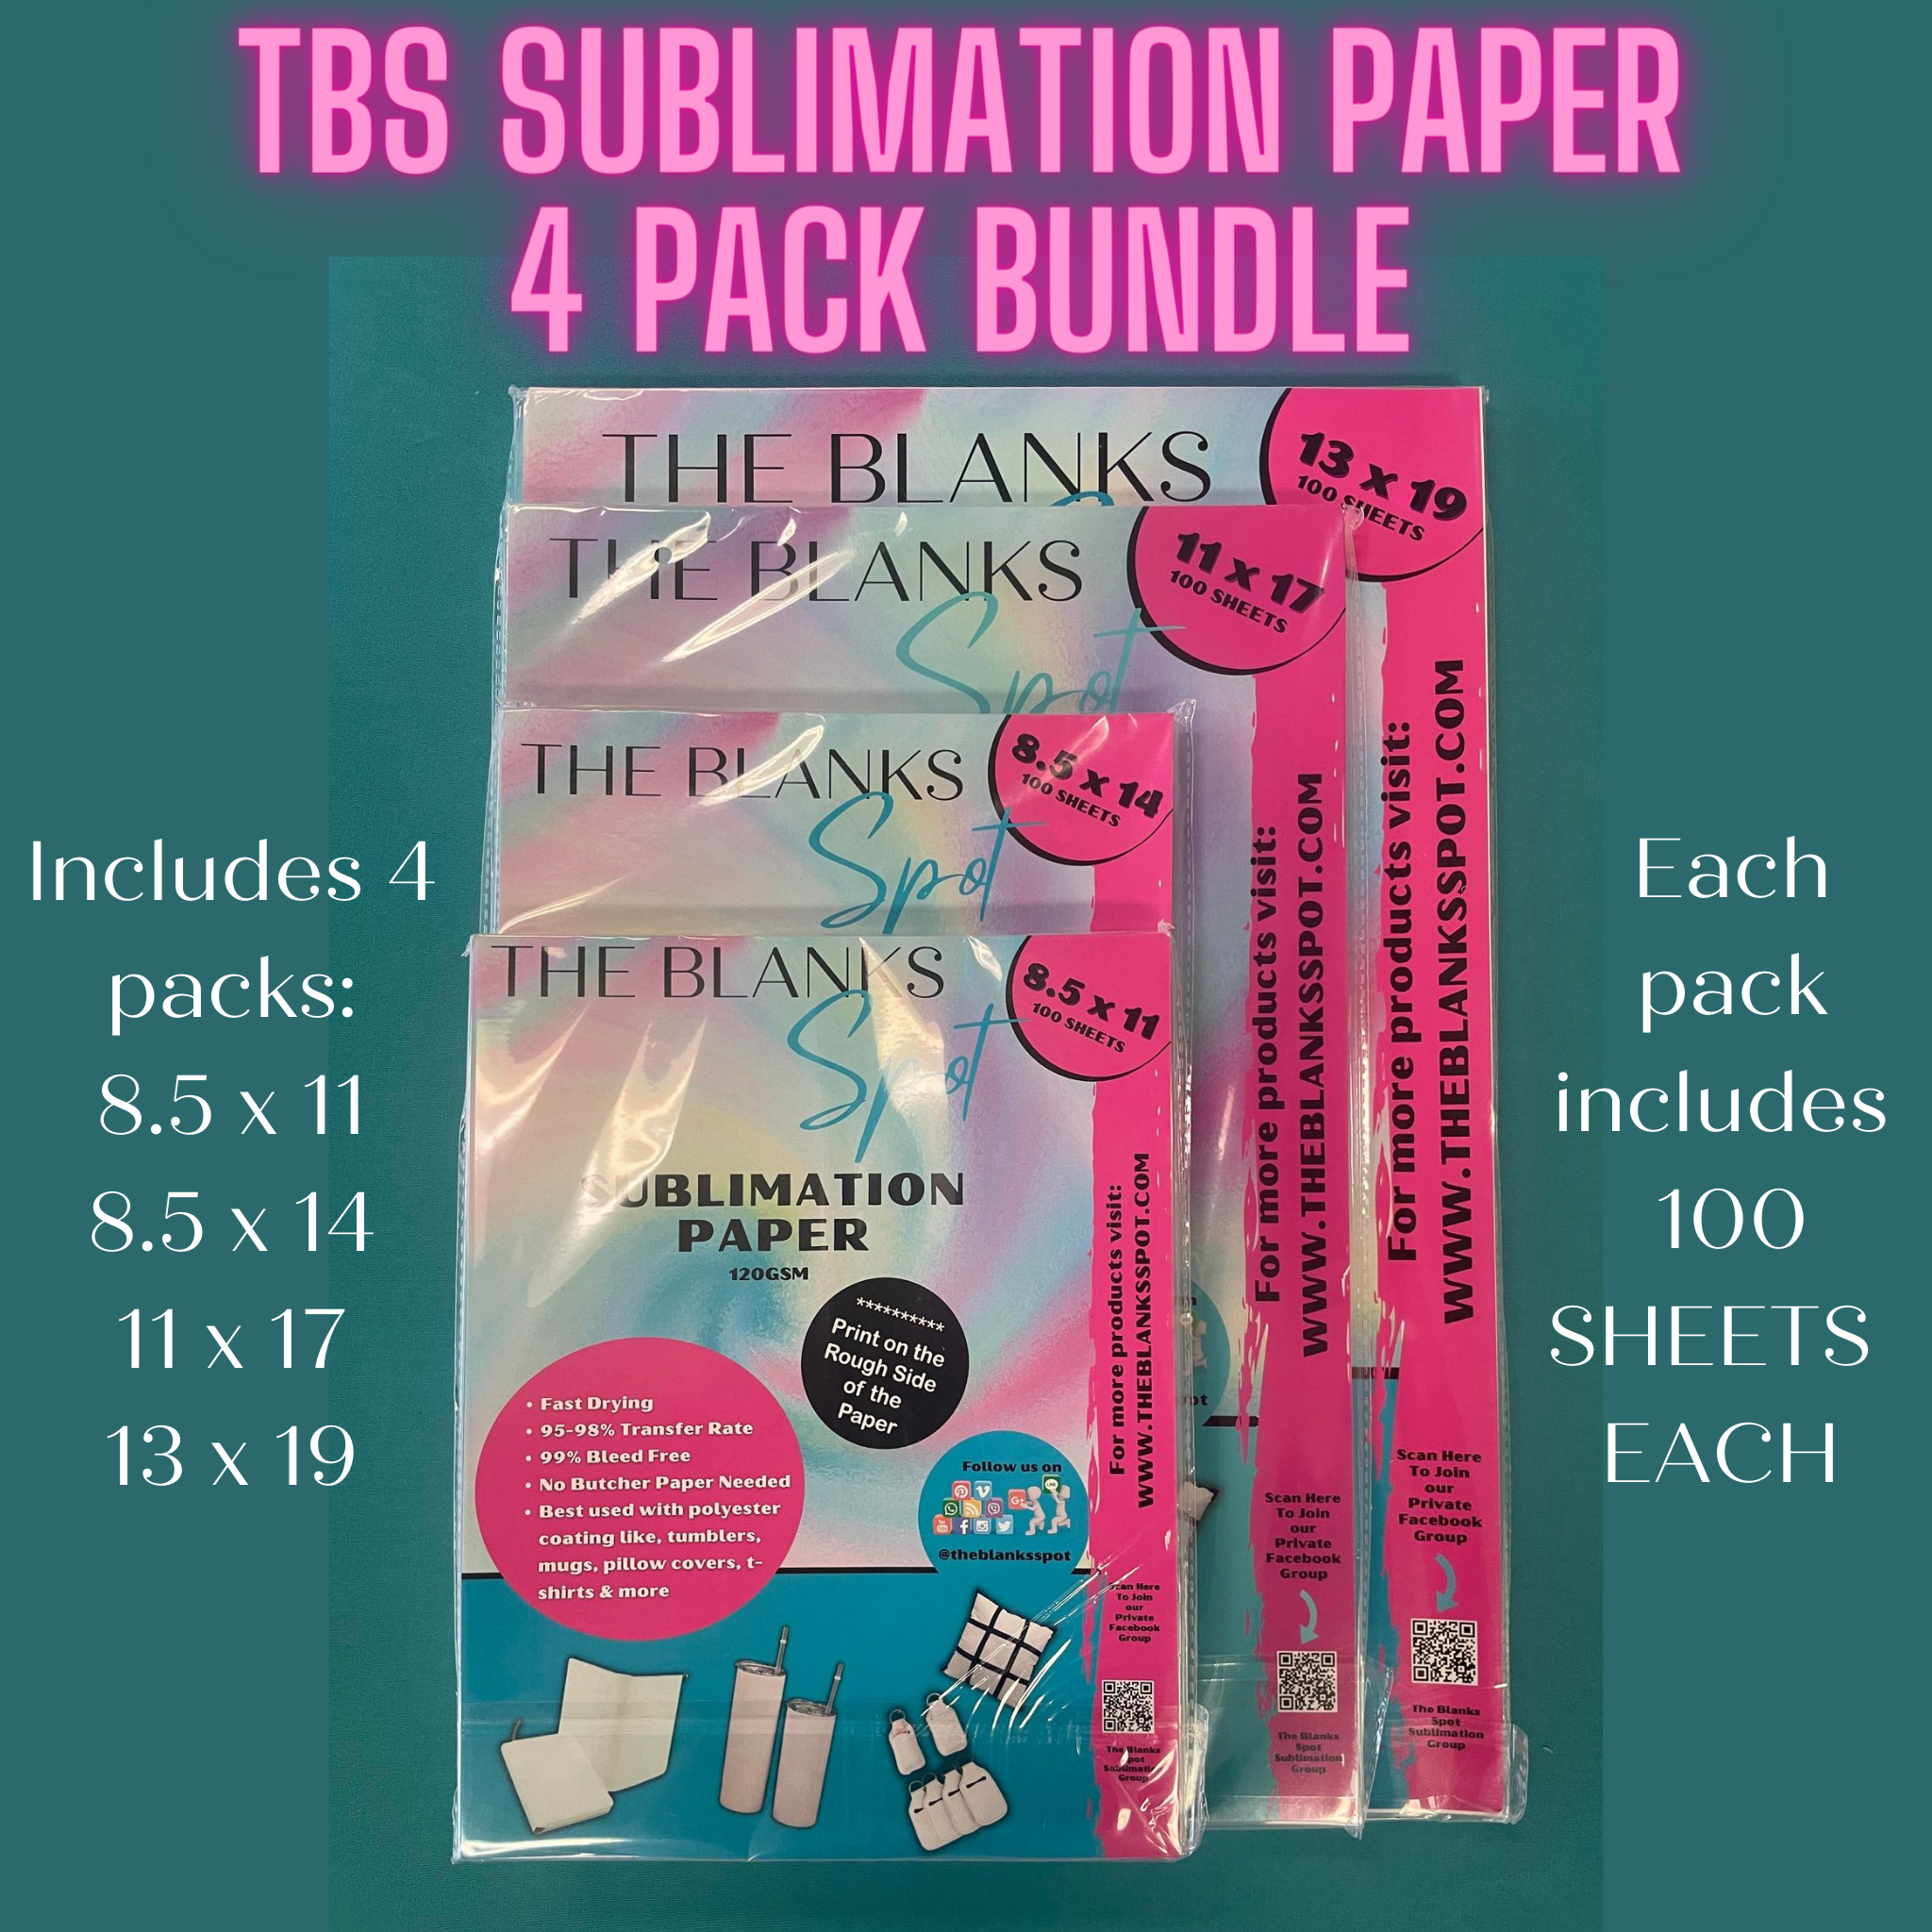 TBS SUBLIMATION PAPER 4 PACK BUNDLE